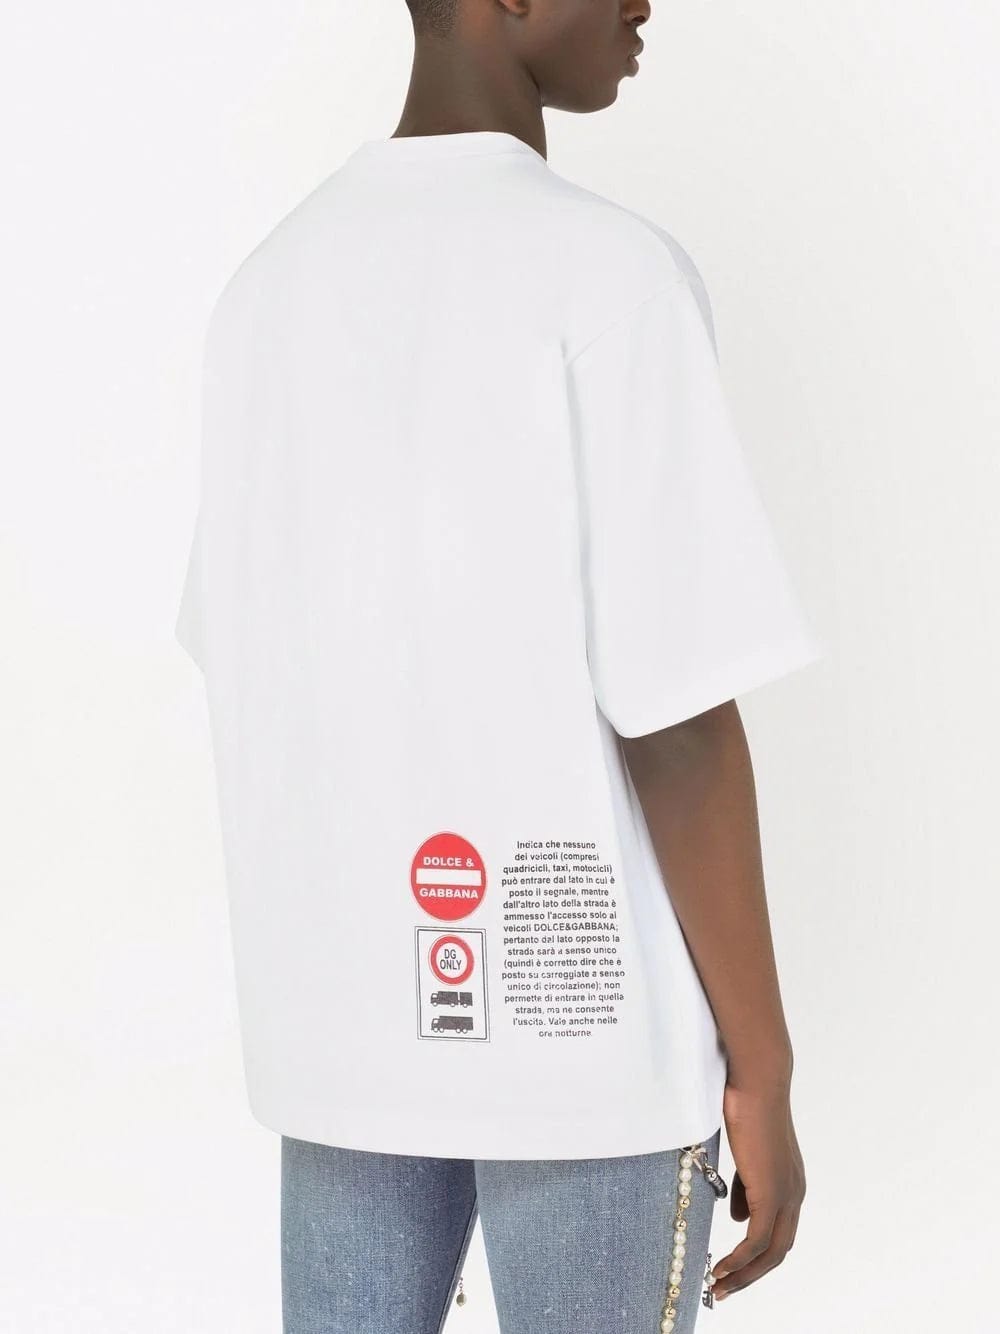 Buy Delberto TshirtT-shirt Men and Women White Digital Printed